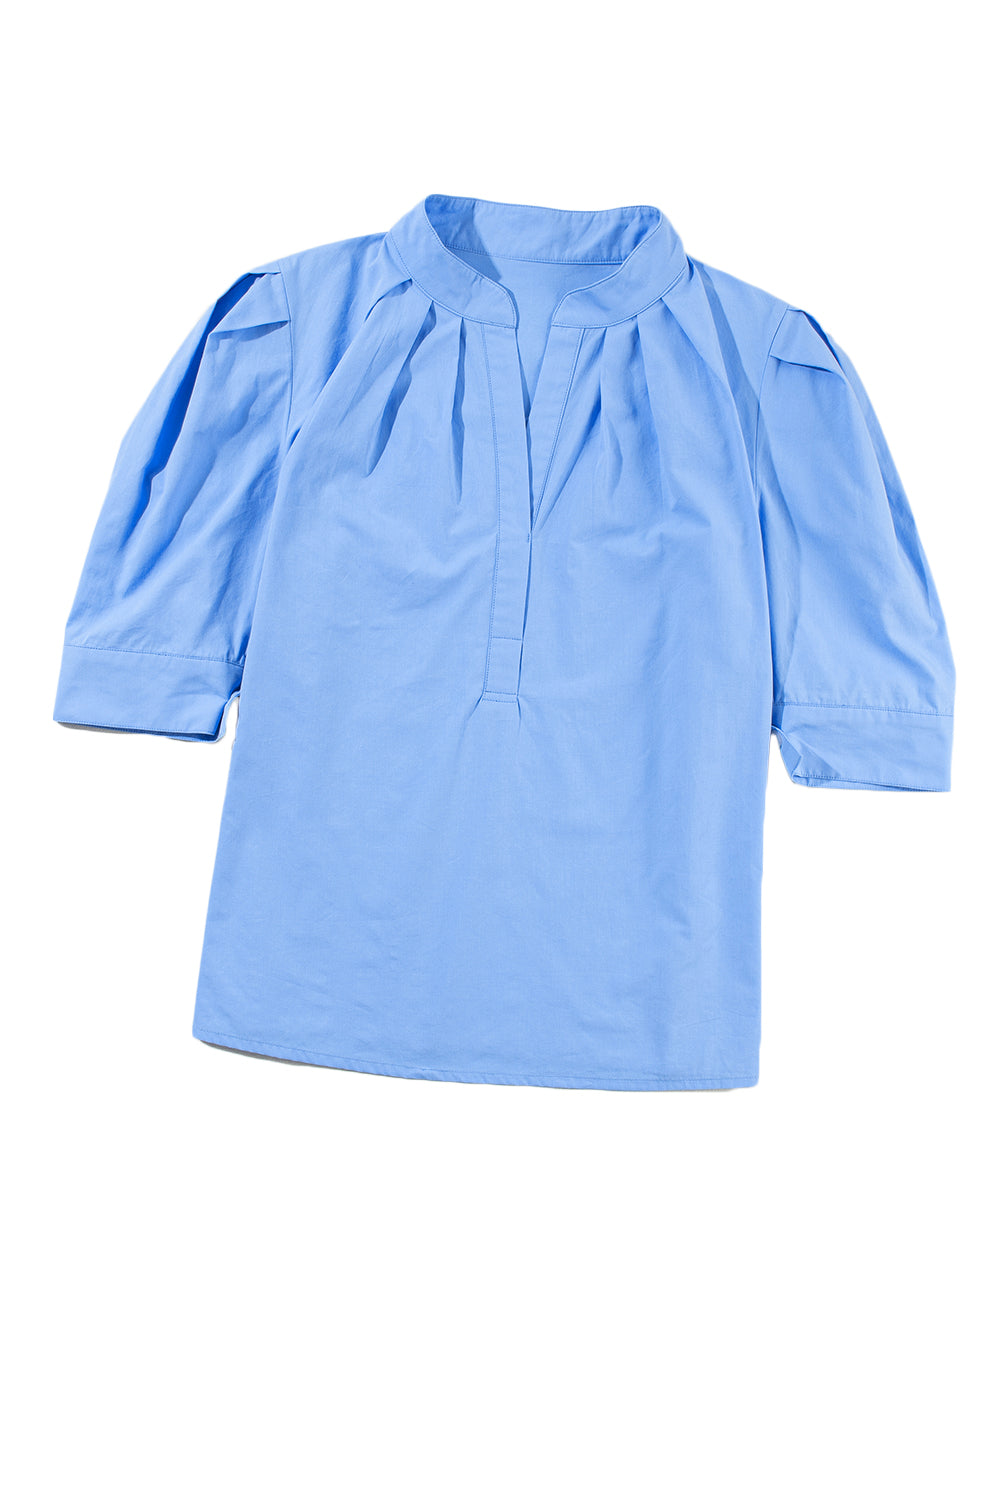 Camicia con collo alto abbottonato e maniche a 3/4 in tinta unita blu cielo